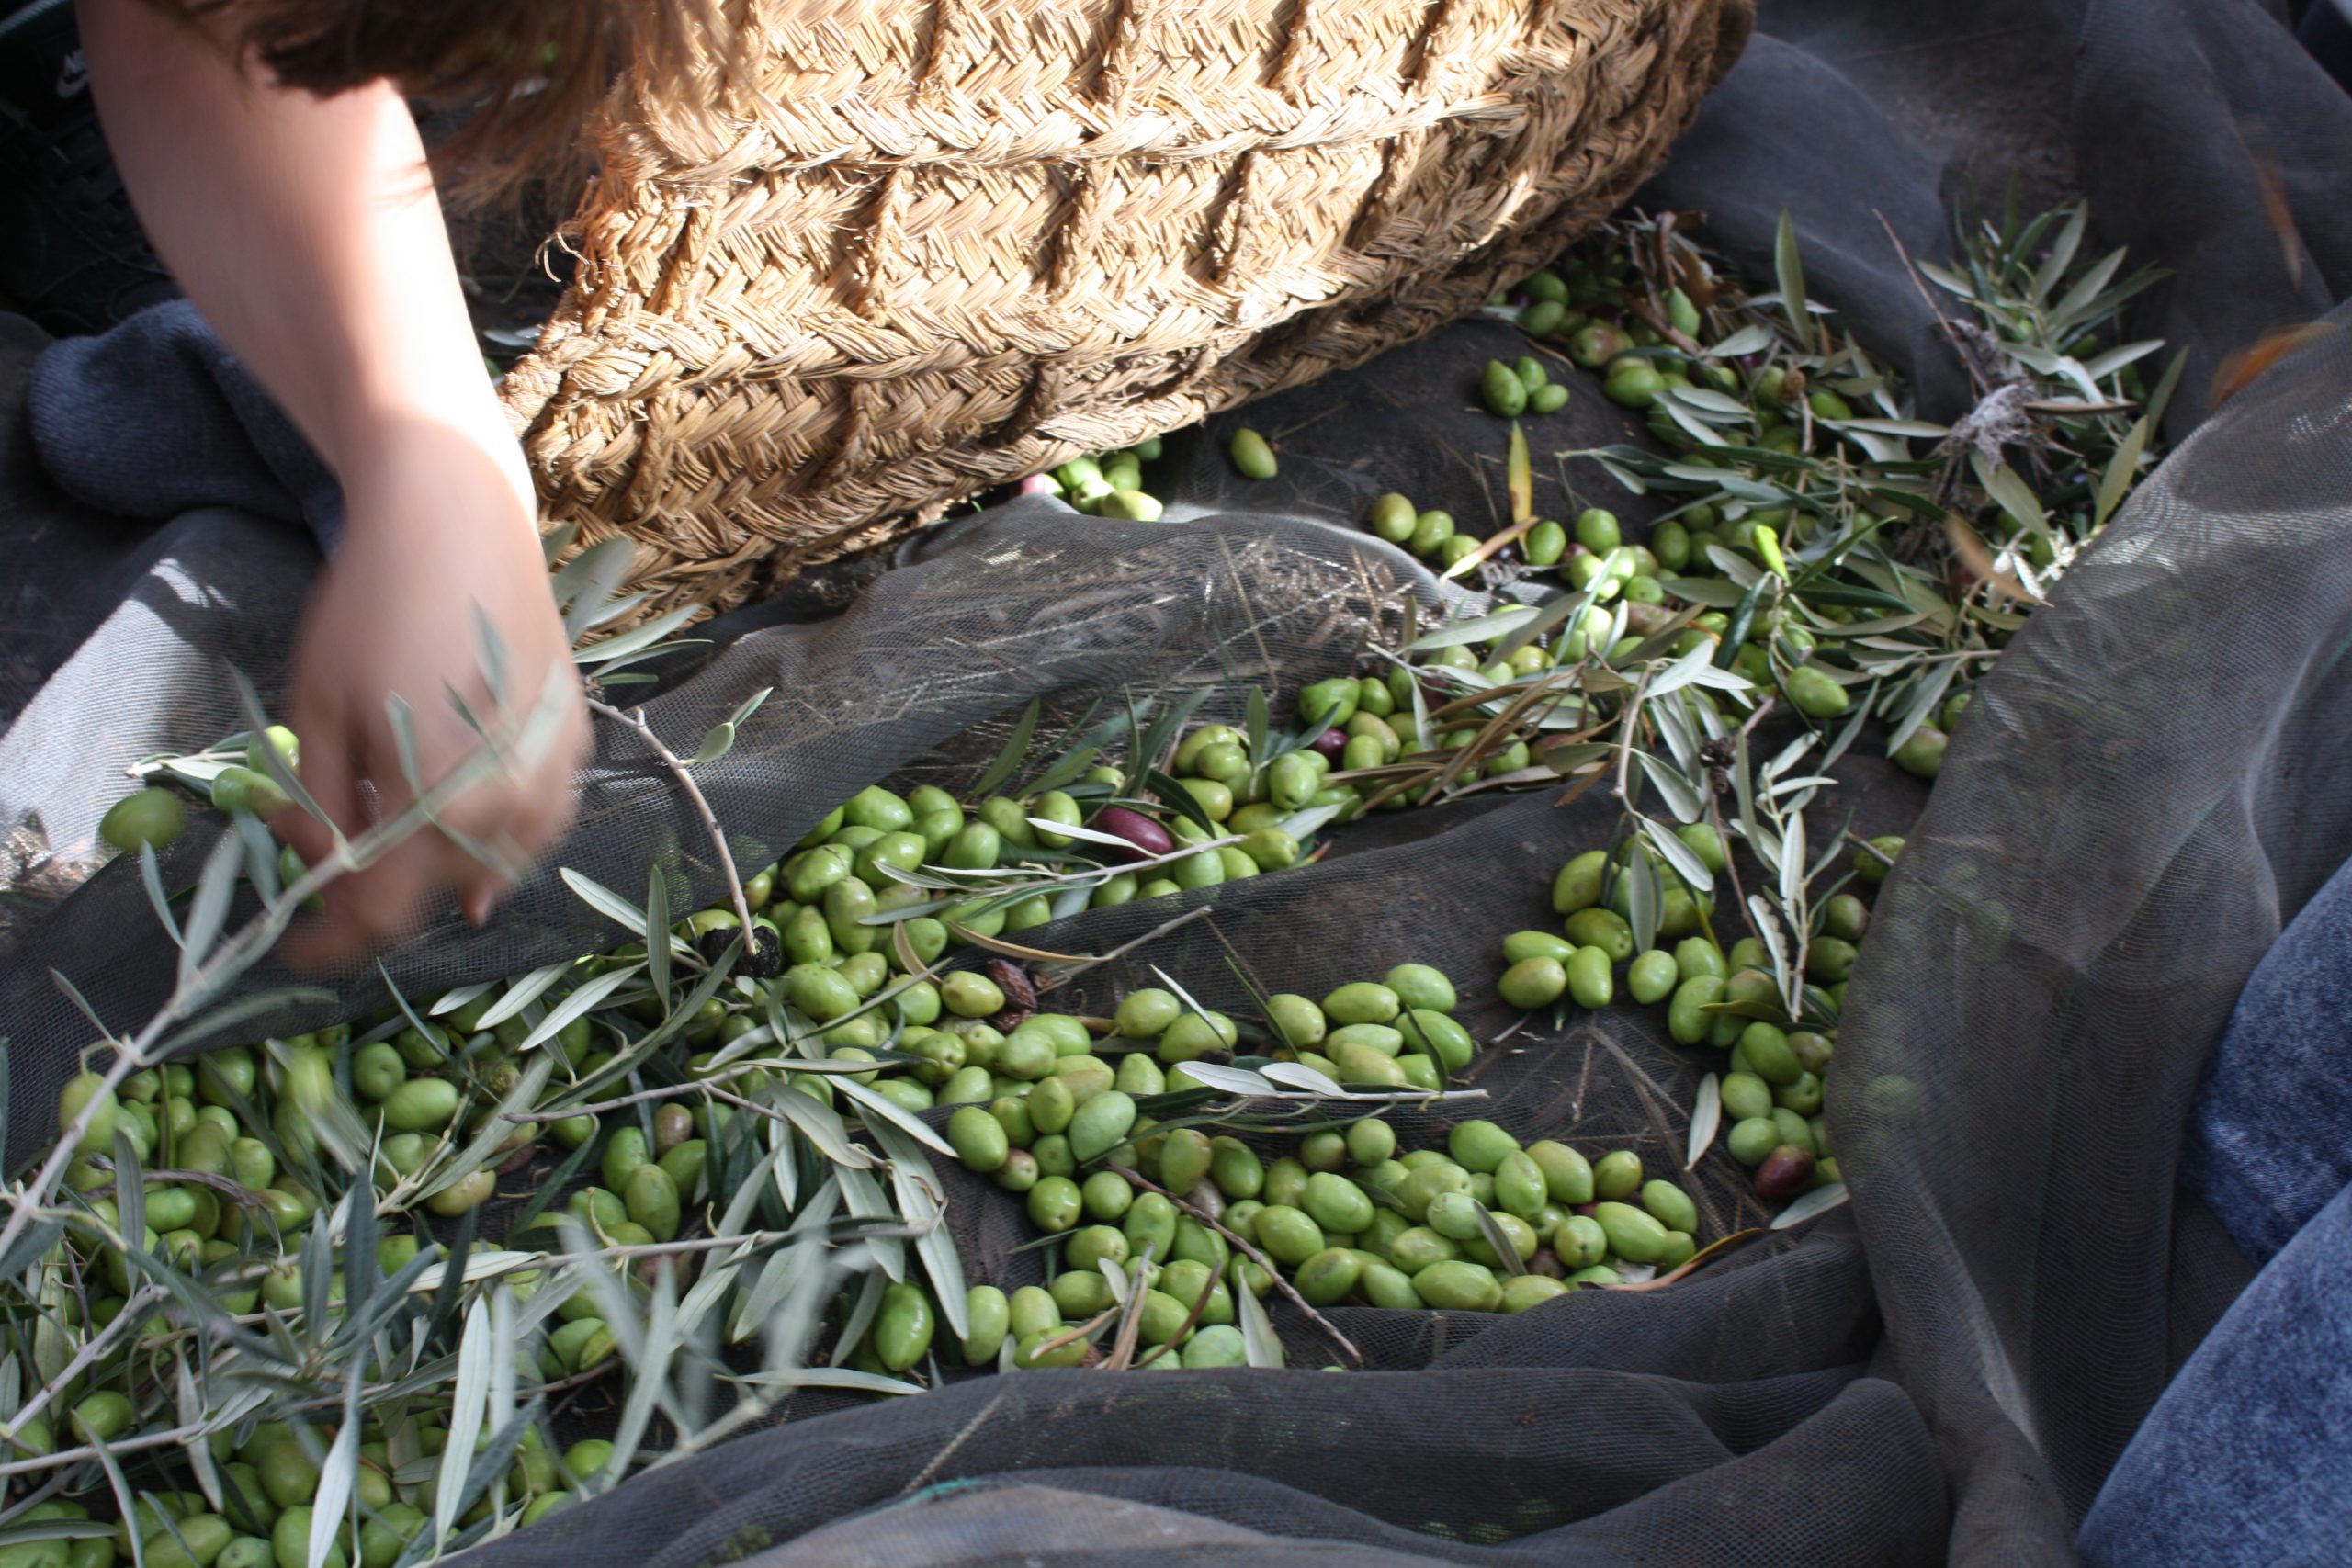 Olive harvest on a blanket